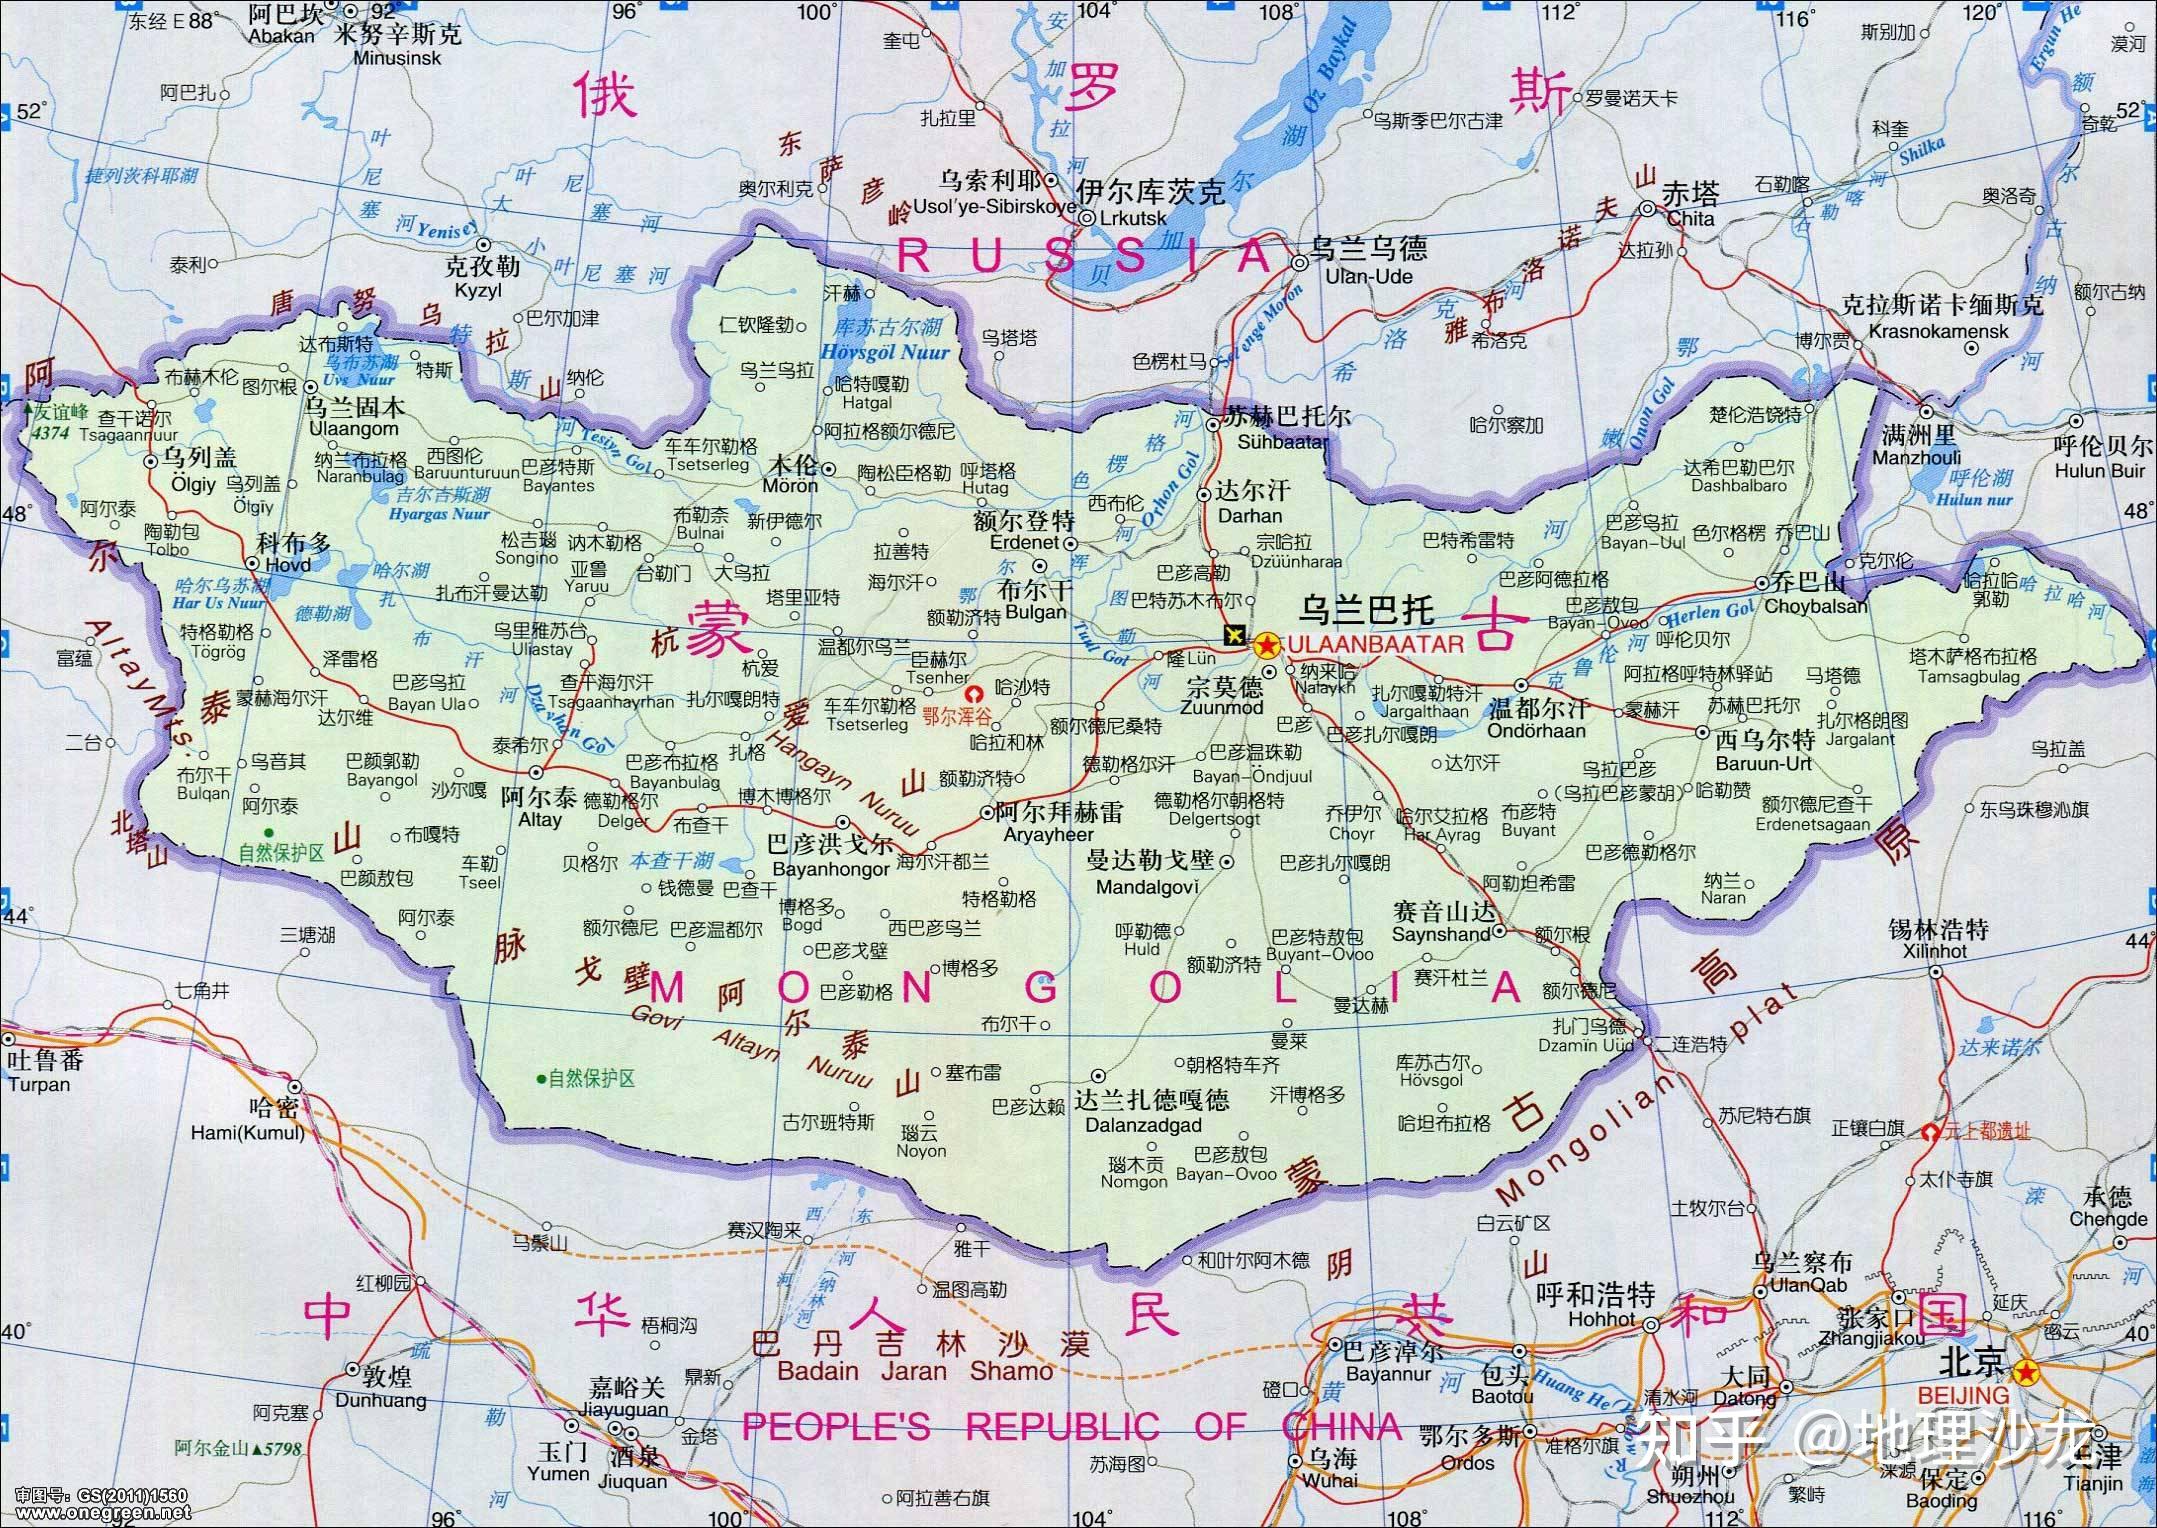 蒙古地图蒙古位于亚洲的东部,属于东亚地区,是一个内陆国家,蒙古国土